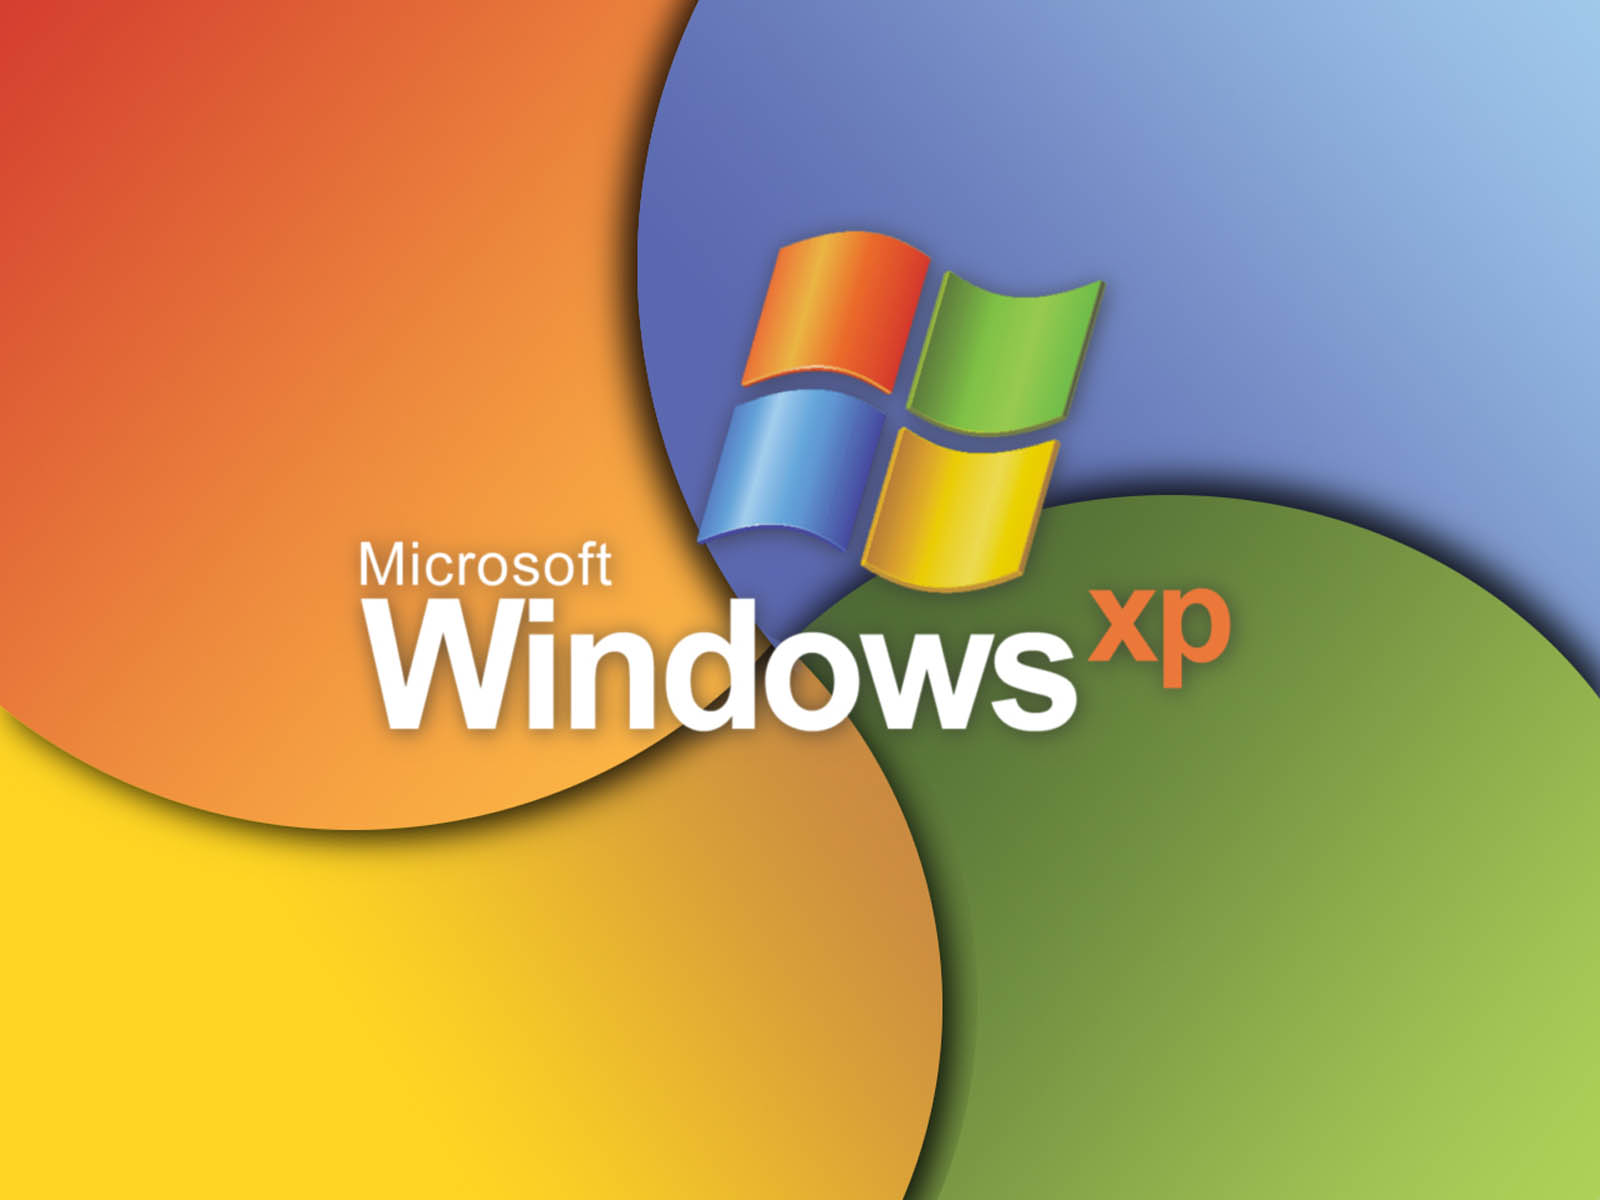 Bạn đang tìm kiếm hình nền cho Windows XP của mình? Không cần phải tìm kiếm thêm! Chúng tôi có đầy đủ hình nền Windows XP để bạn chọn từ đó. Tải ngay và trải nghiệm!